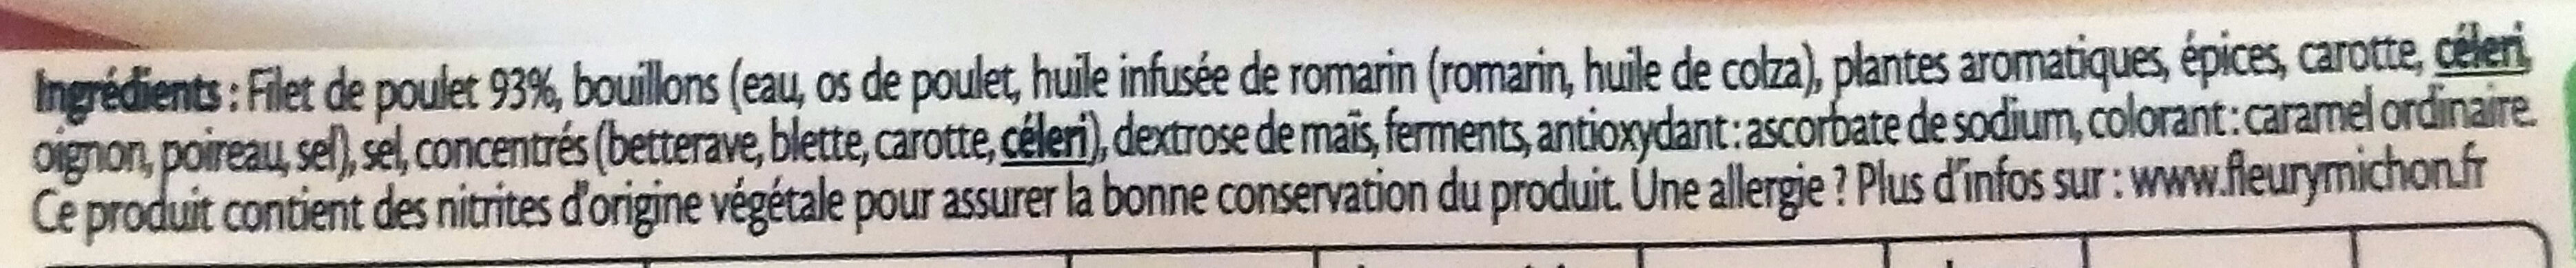 Filet de Poulet - Fumé - Ingrédients